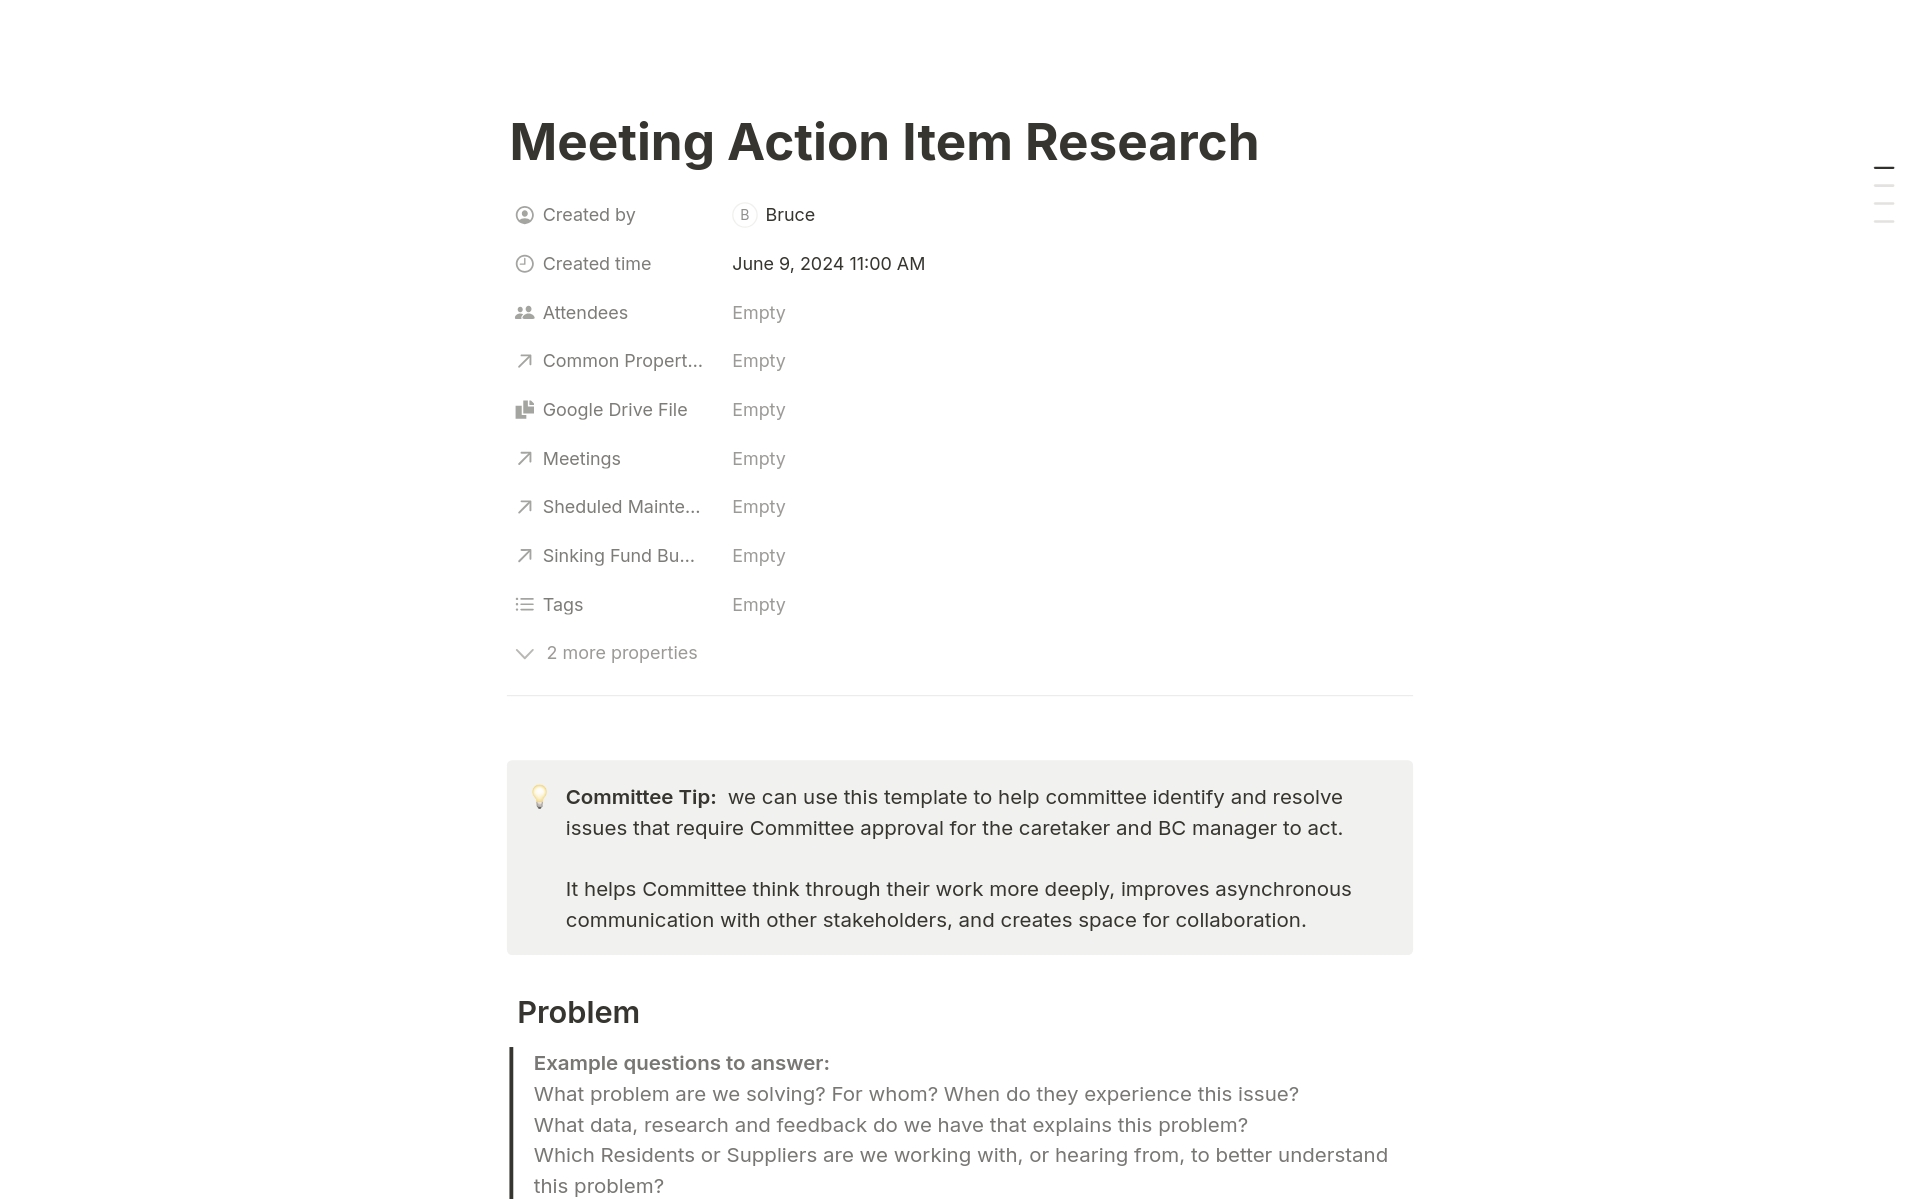 Aperçu du modèle de Meeting Action Item Research